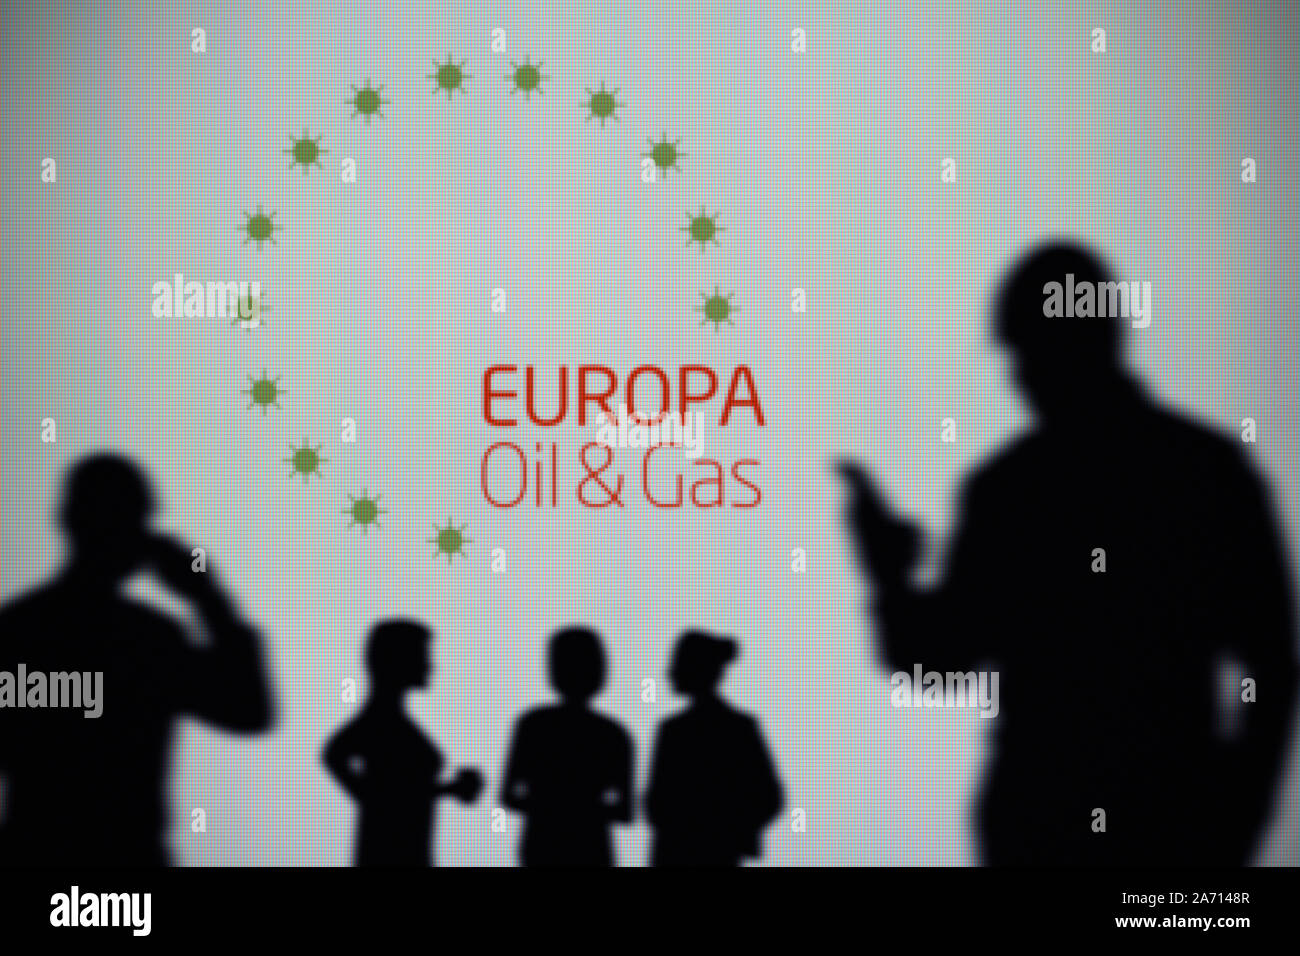 L'Europa Oil & Gas logo est visible sur un écran LED à l'arrière-plan tandis qu'une silhouette personne utilise un smartphone (usage éditorial uniquement) Banque D'Images